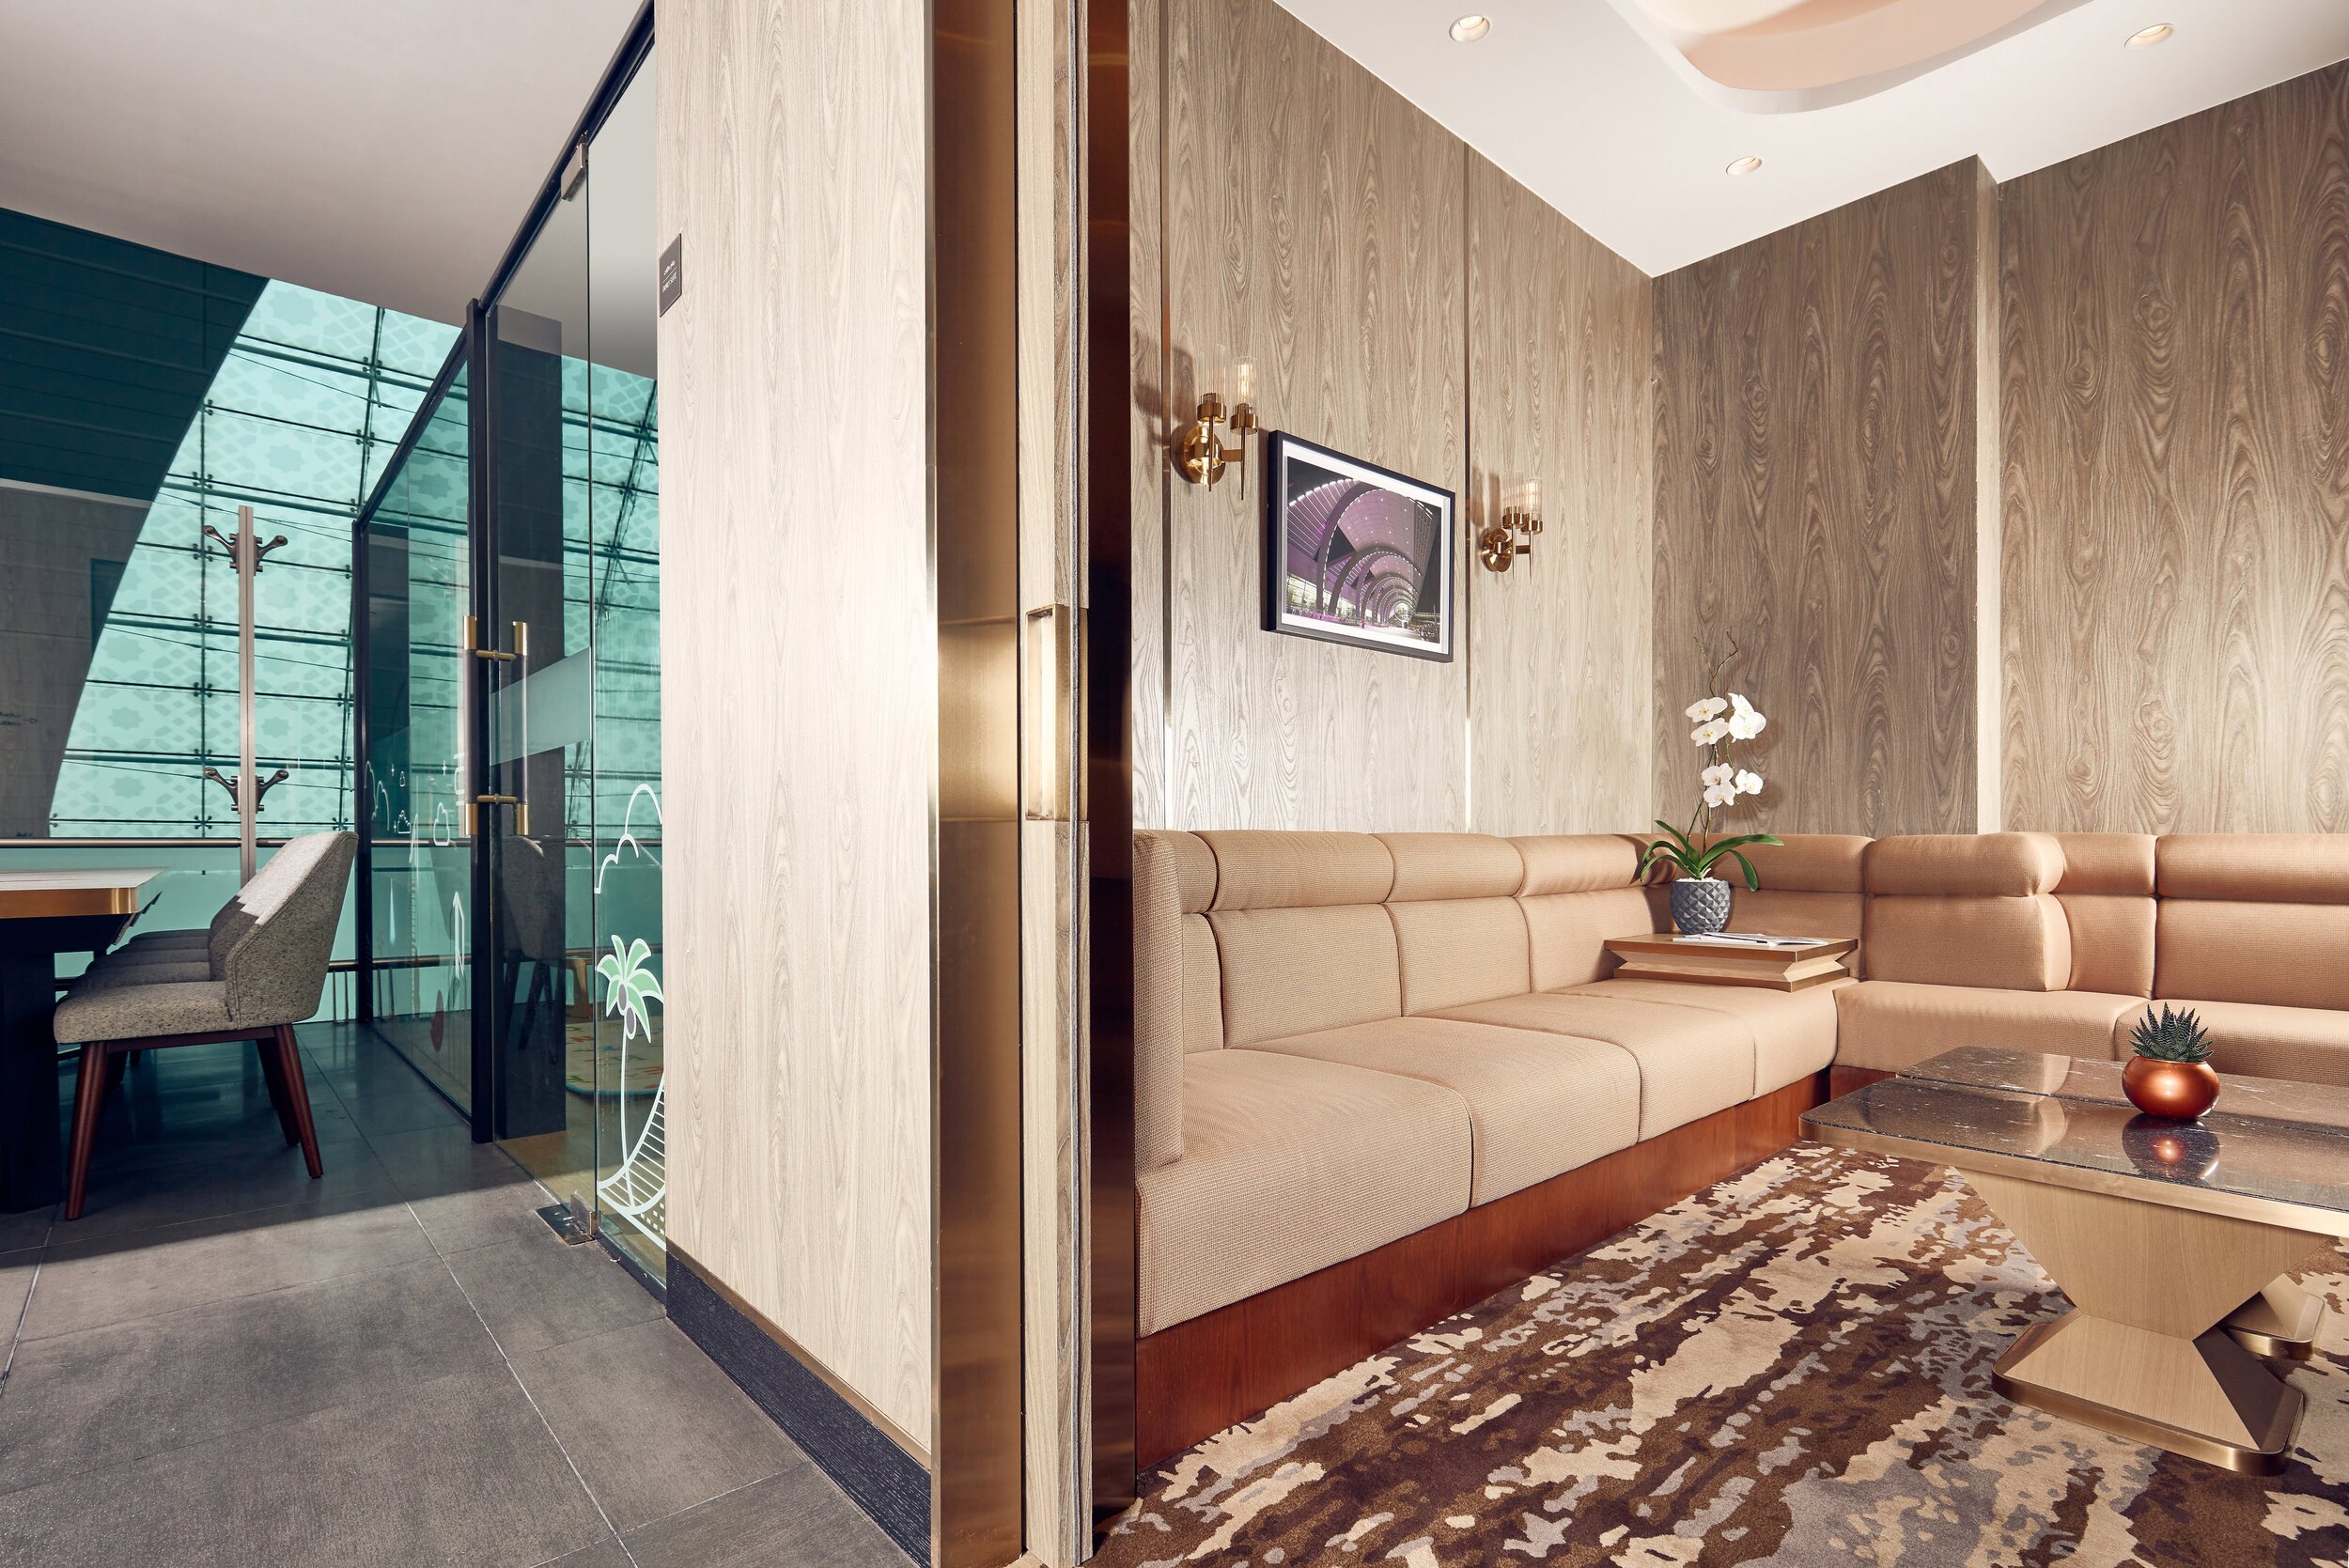 Plaza Premium Lounge Dubai - Family Suite.jpg